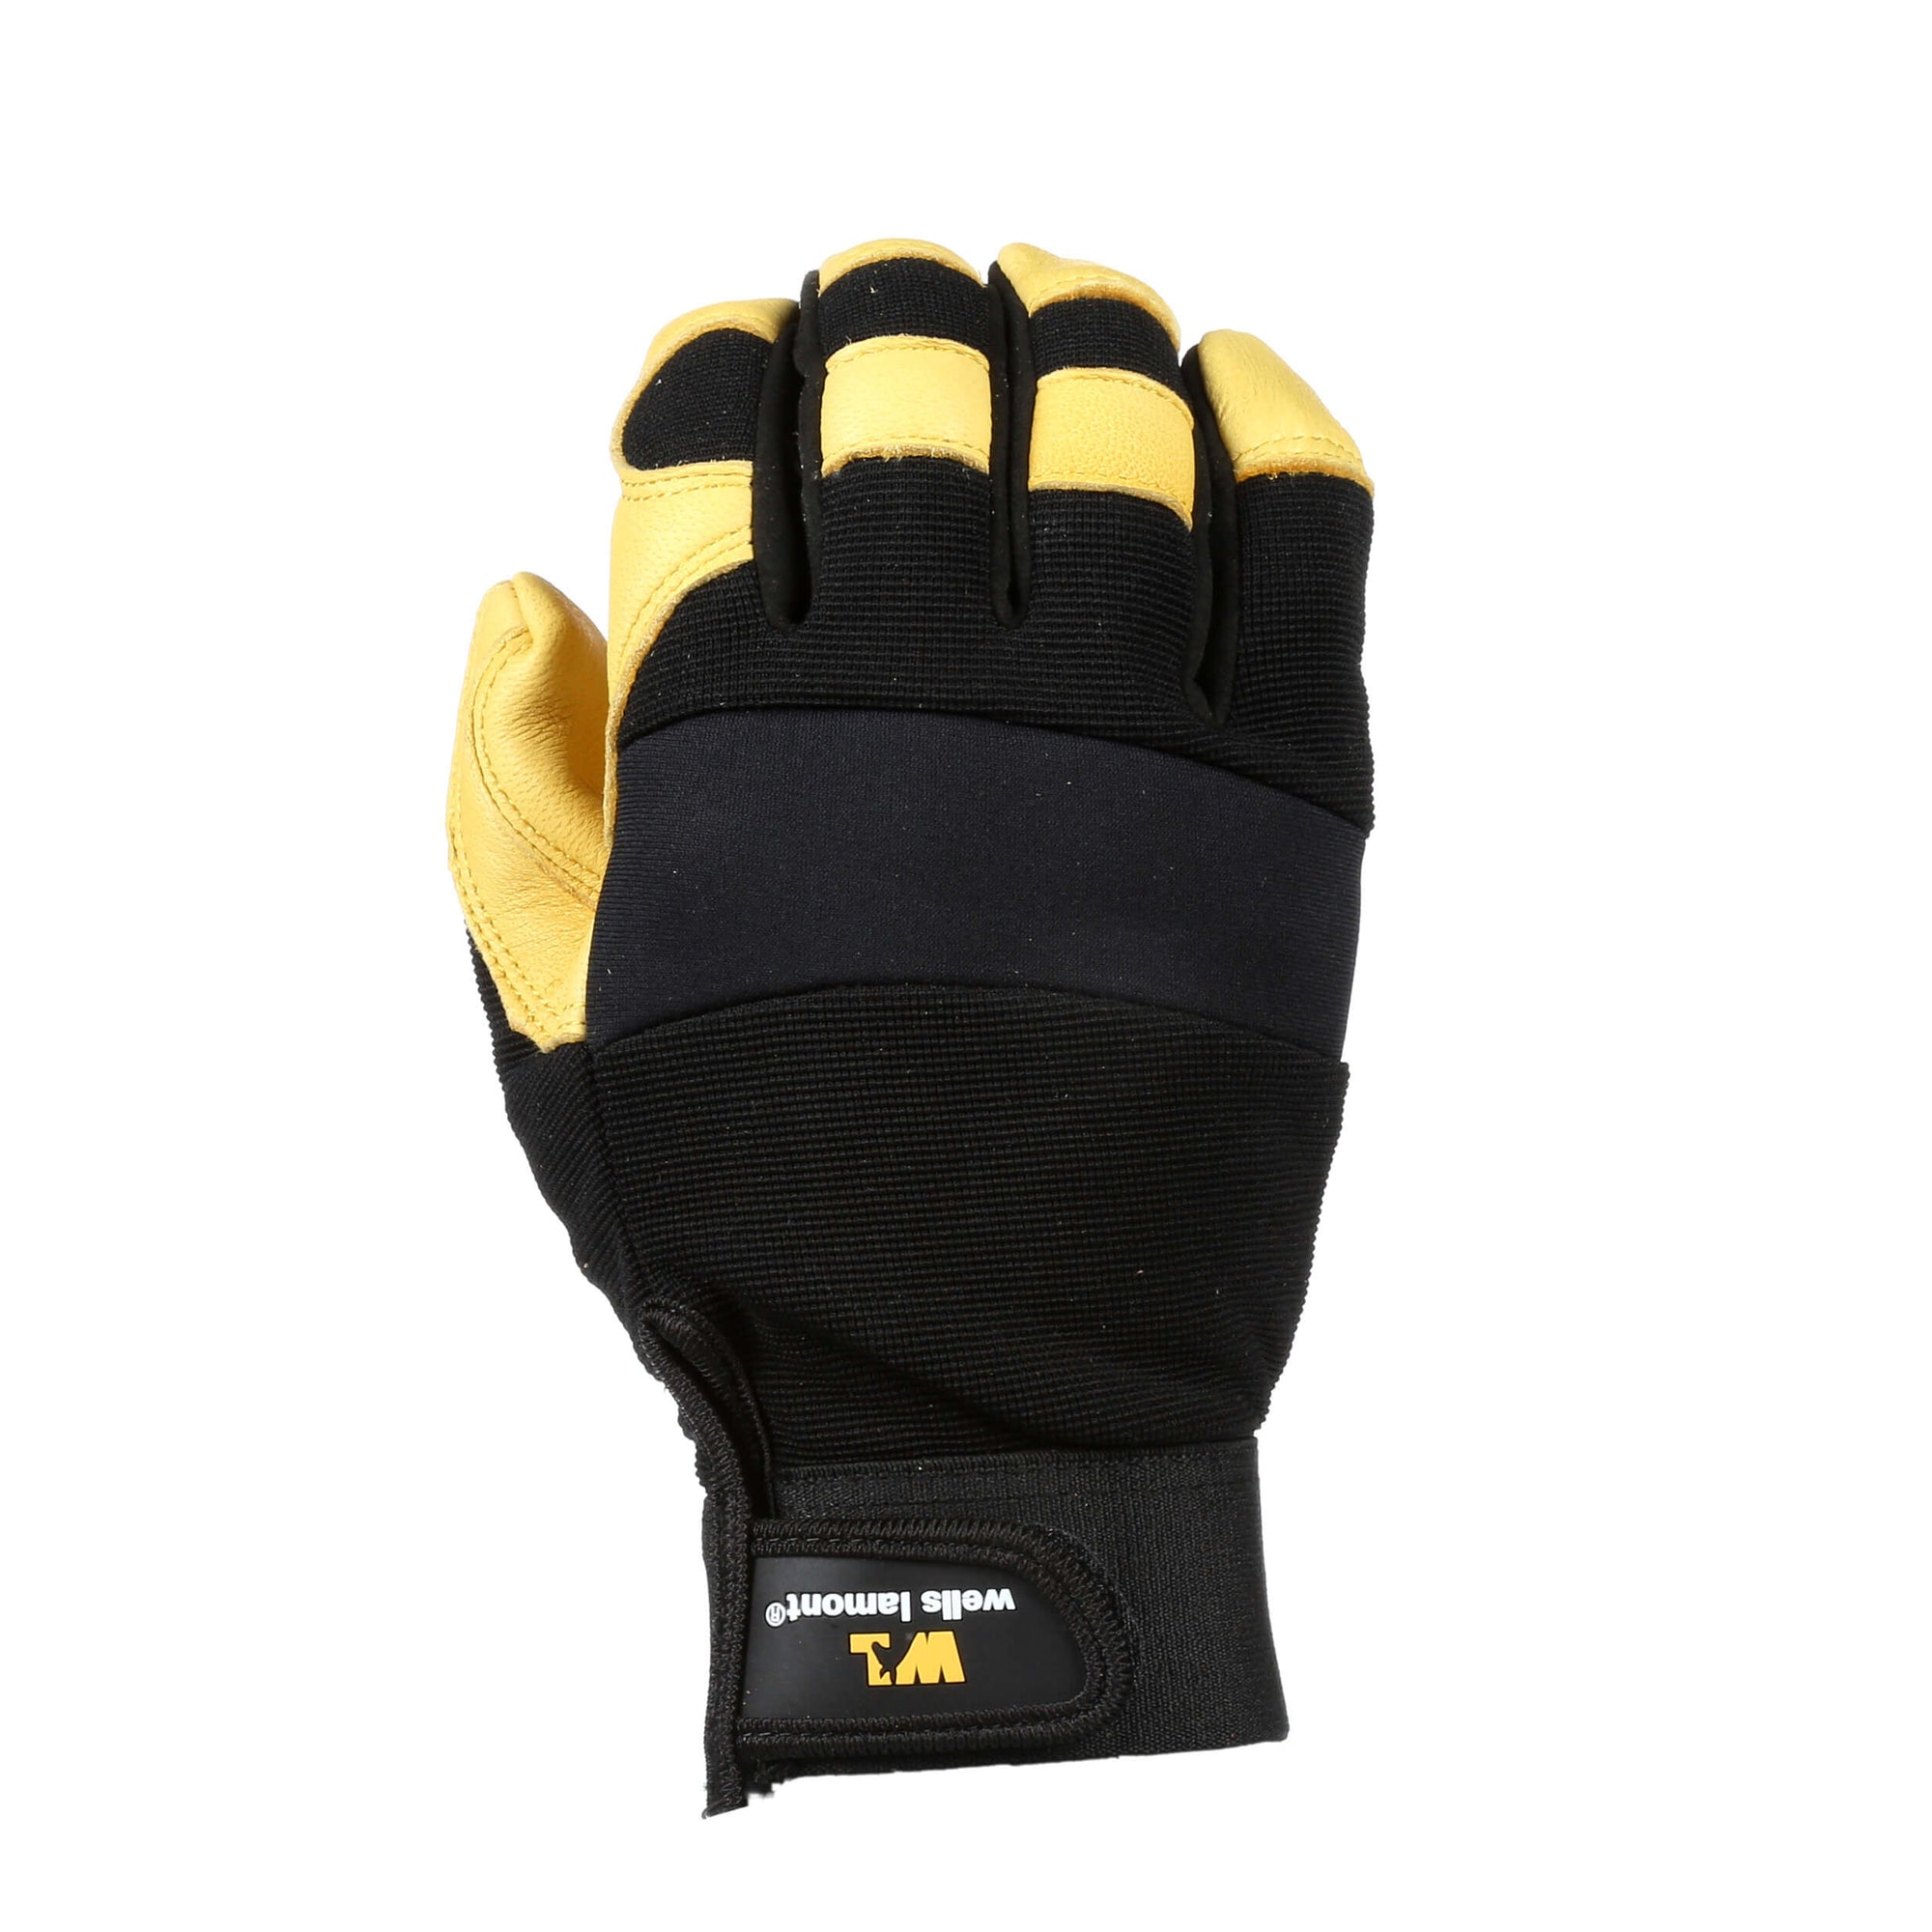 Wells Lamont Men's Deerskin Leather Palm Hybrid Stretch Spandex Work Gloves - Work World - Workwear, Work Boots, Safety Gear